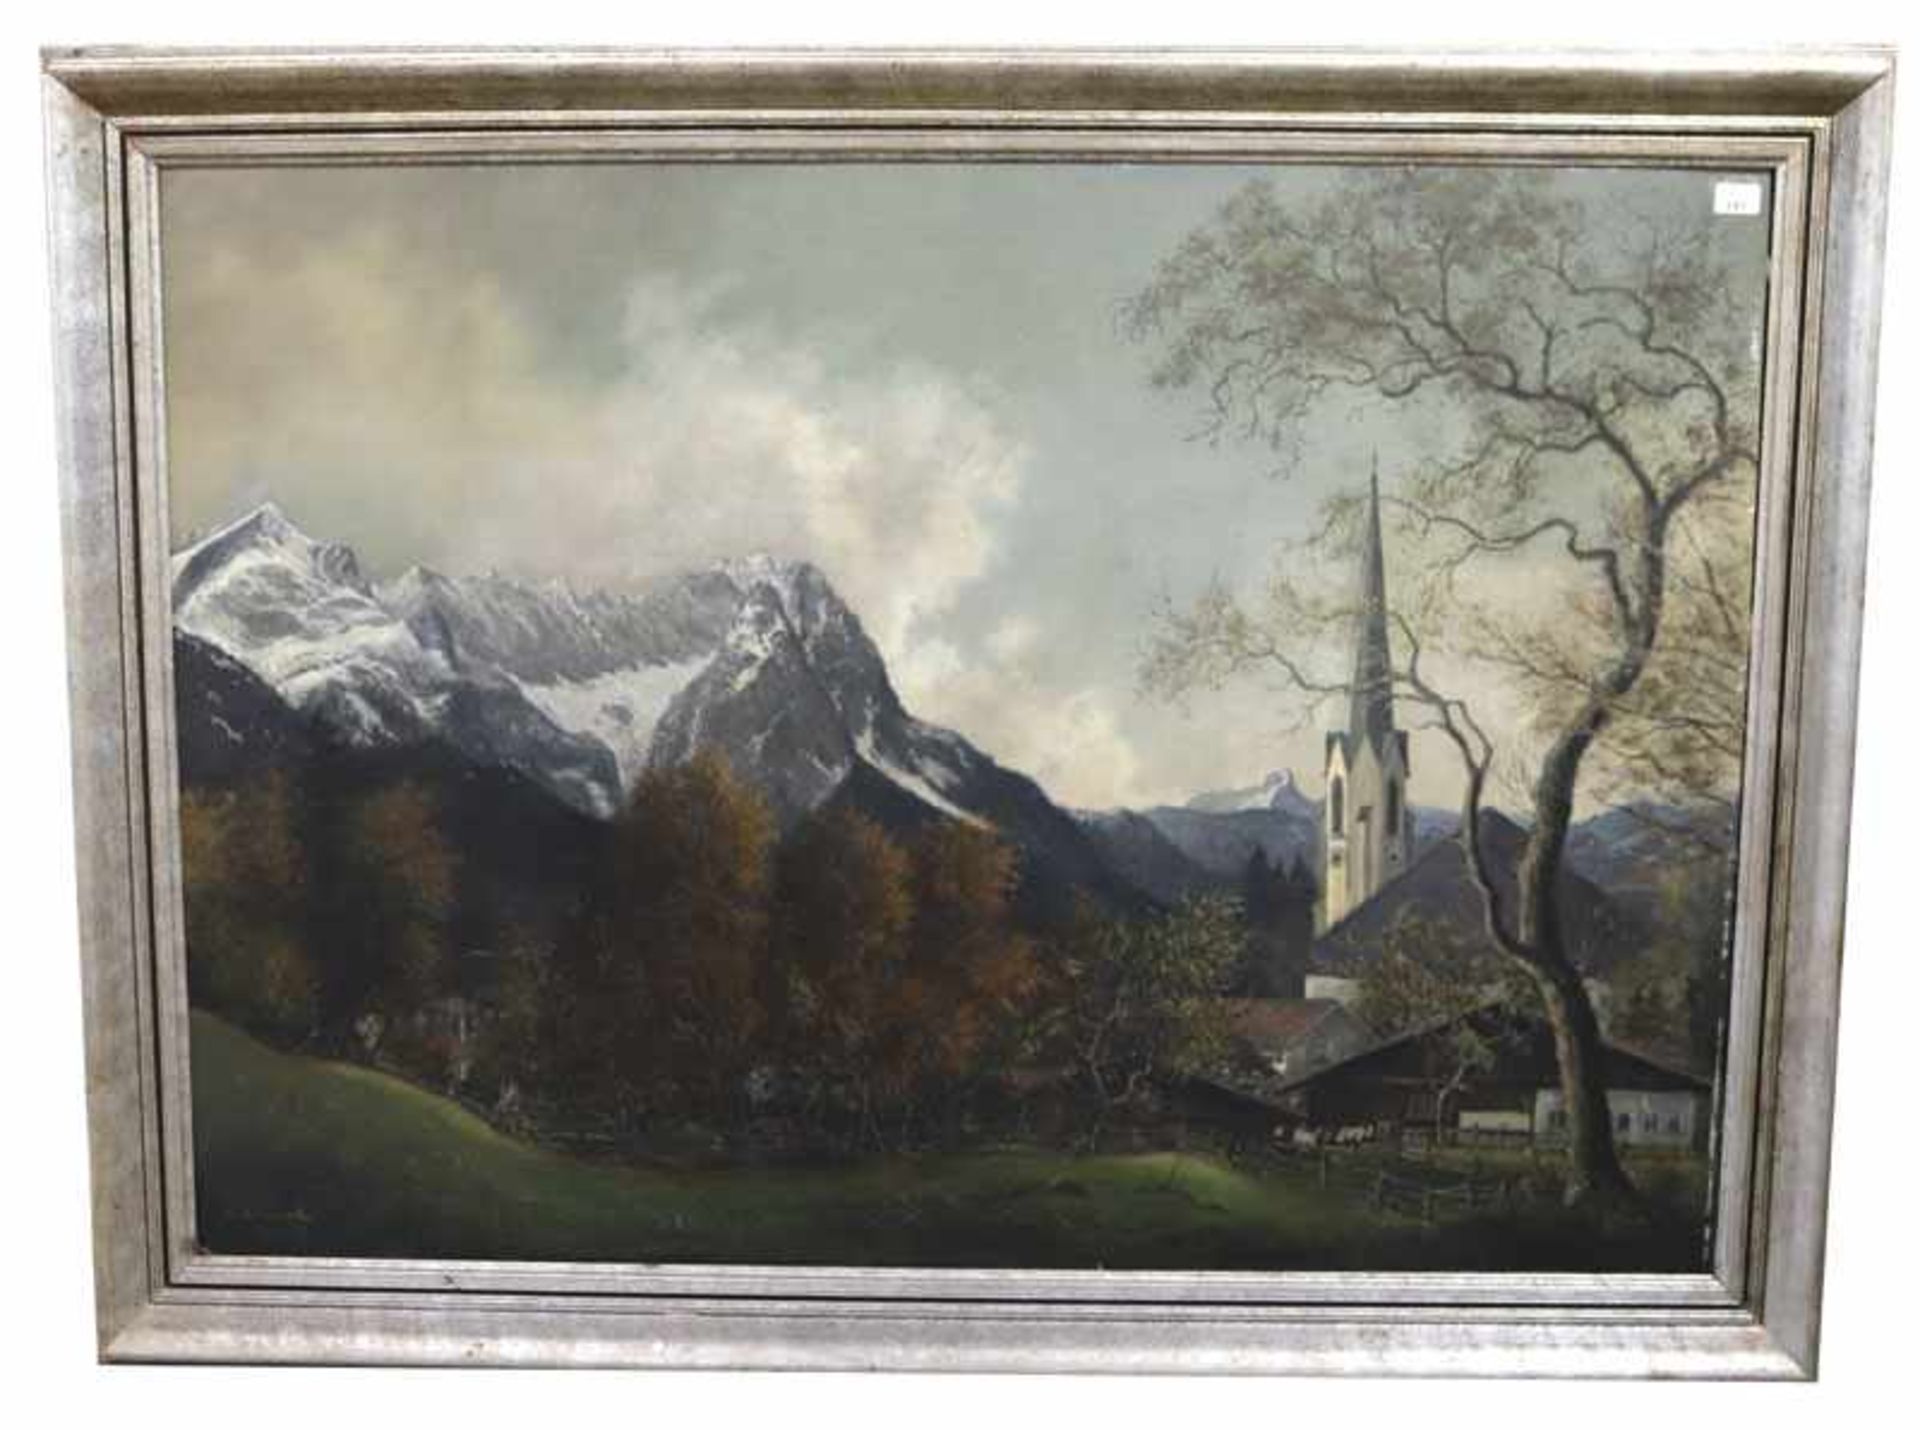 Gemälde ÖL/Hartfaser 'Garmisch vorm Wettersteingebirge', signert C. L. Loreck, datiert 50, Maler,